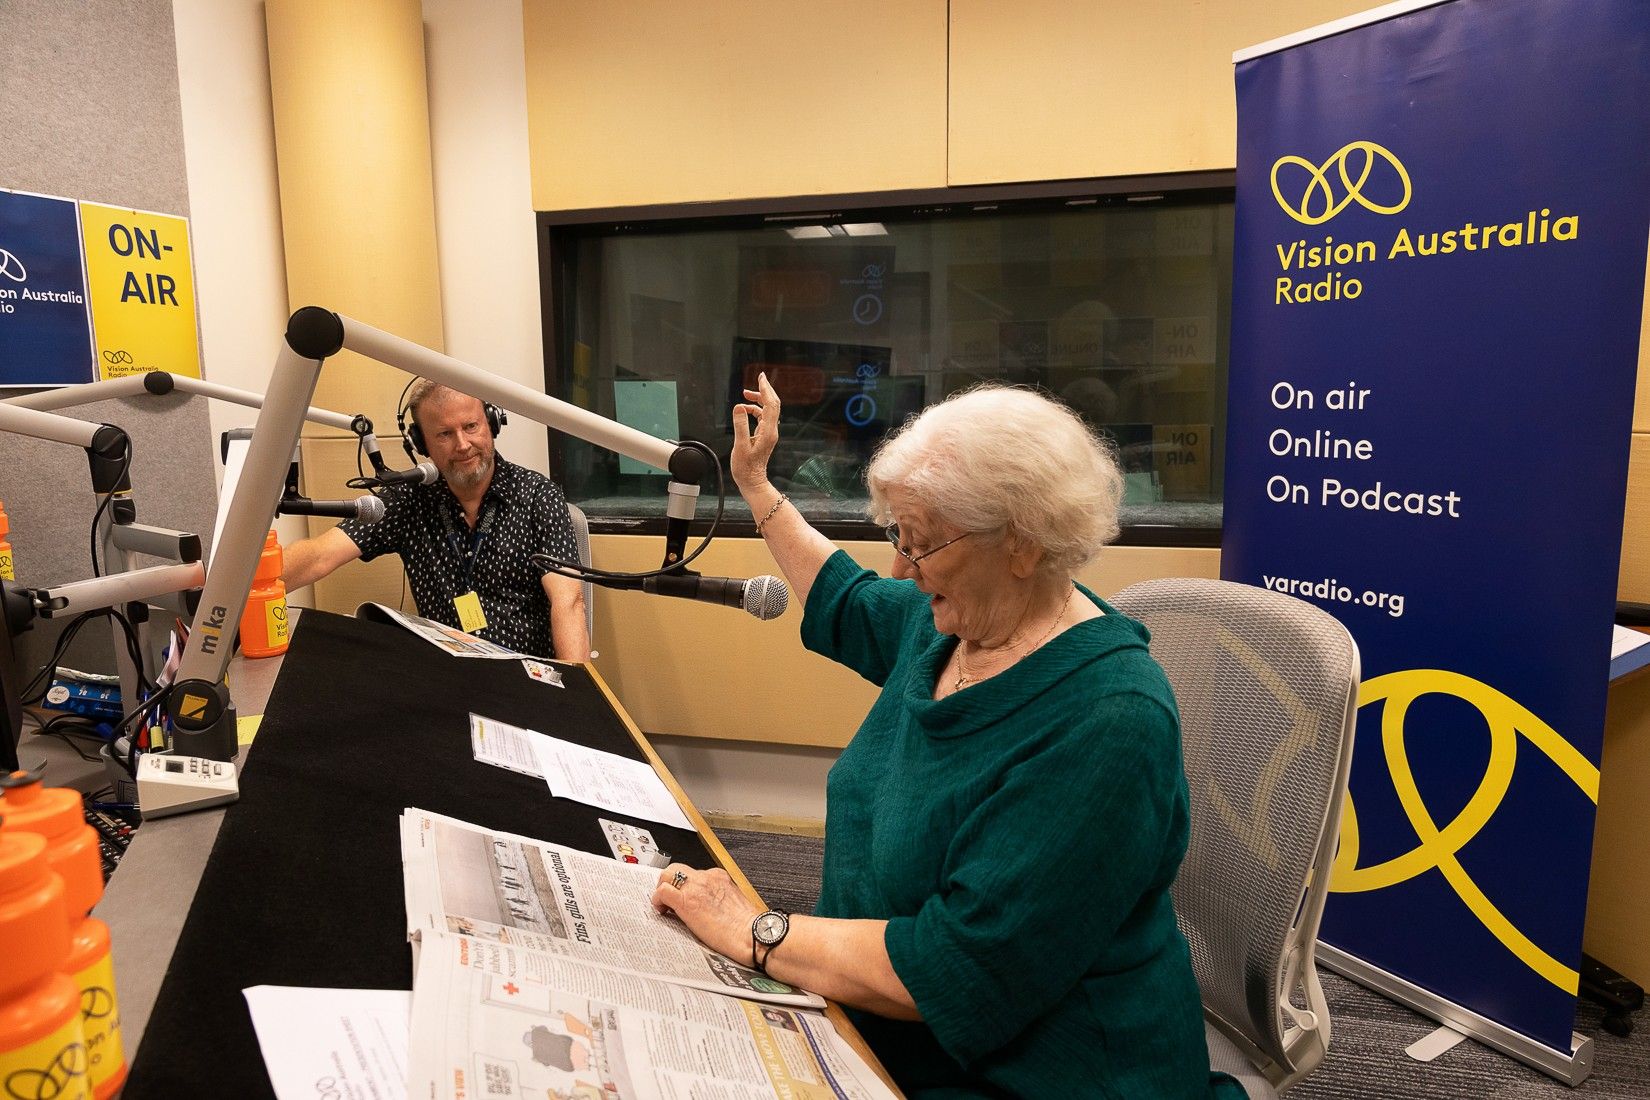 image of man and woman on air at Vision Australia radio